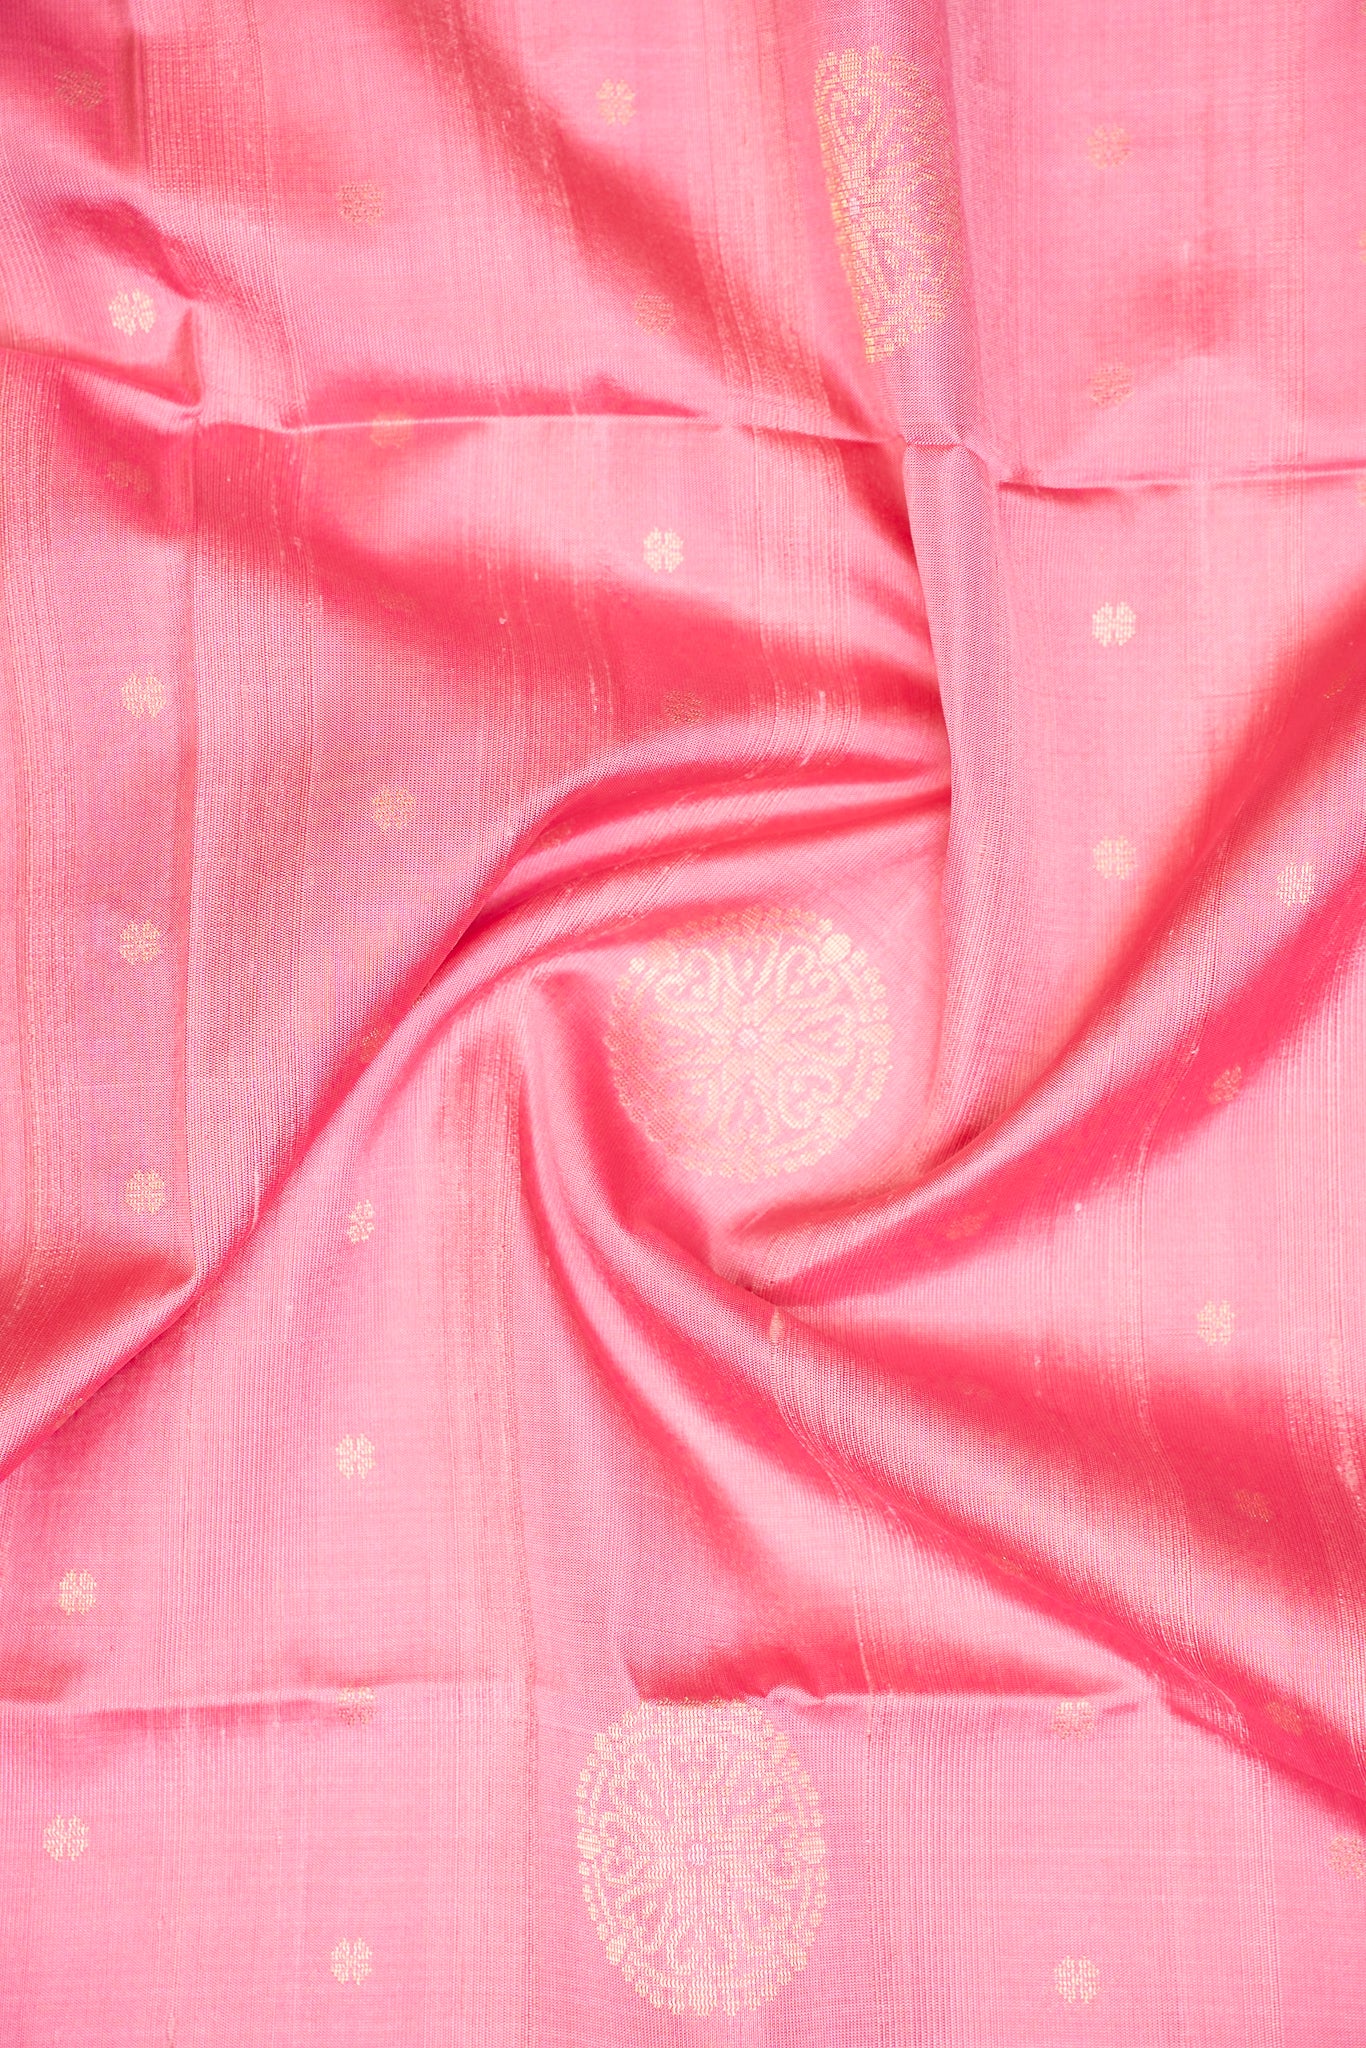 Lotus Pink Dupian Pure Borderless Soft Silk Saree - Clio Silks